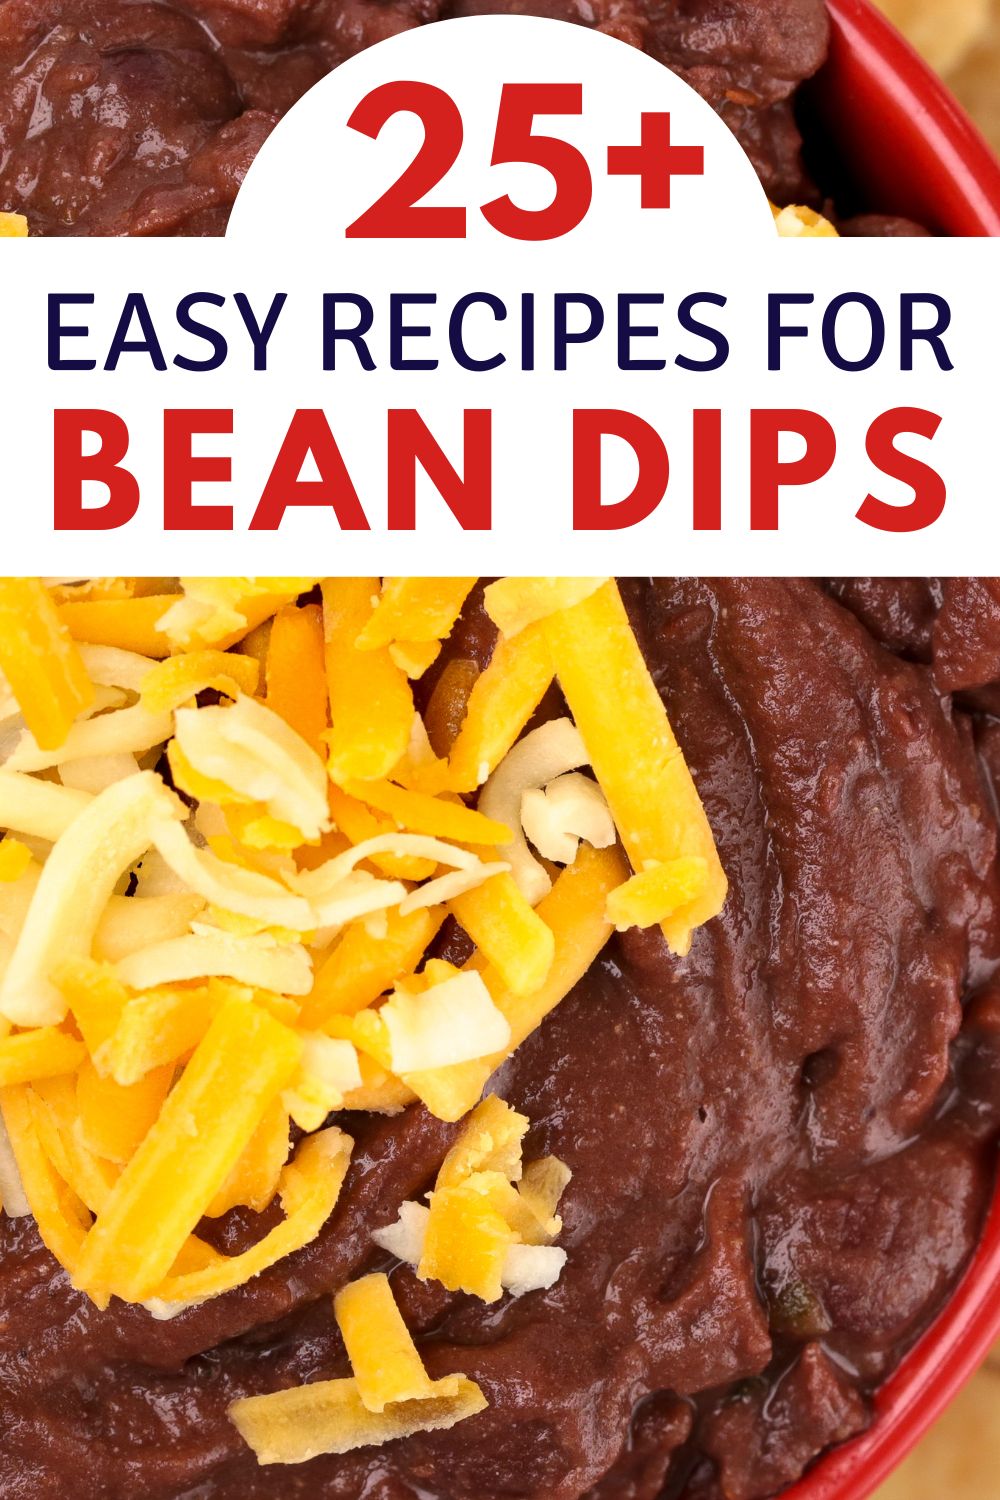 25+ easy recipes for bean dip - black bean dip in red bowl